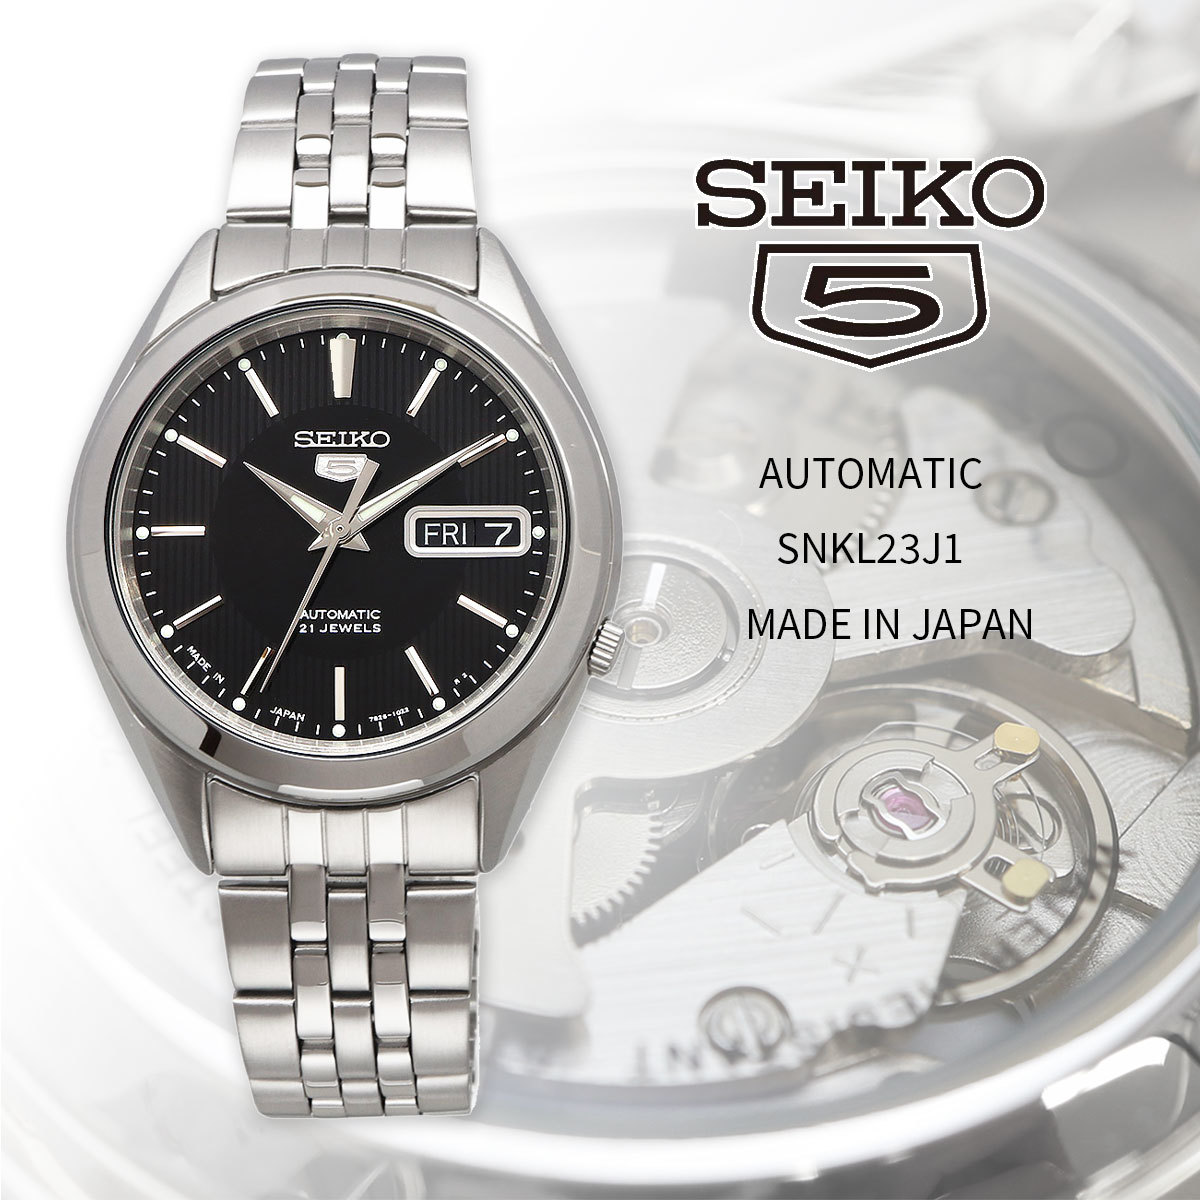 Seiko Seiko Watch Men's Overseas Model, сделанная в Японии Seiko 5 Автоматическое ветровое дело. Случайный SNKL23J1